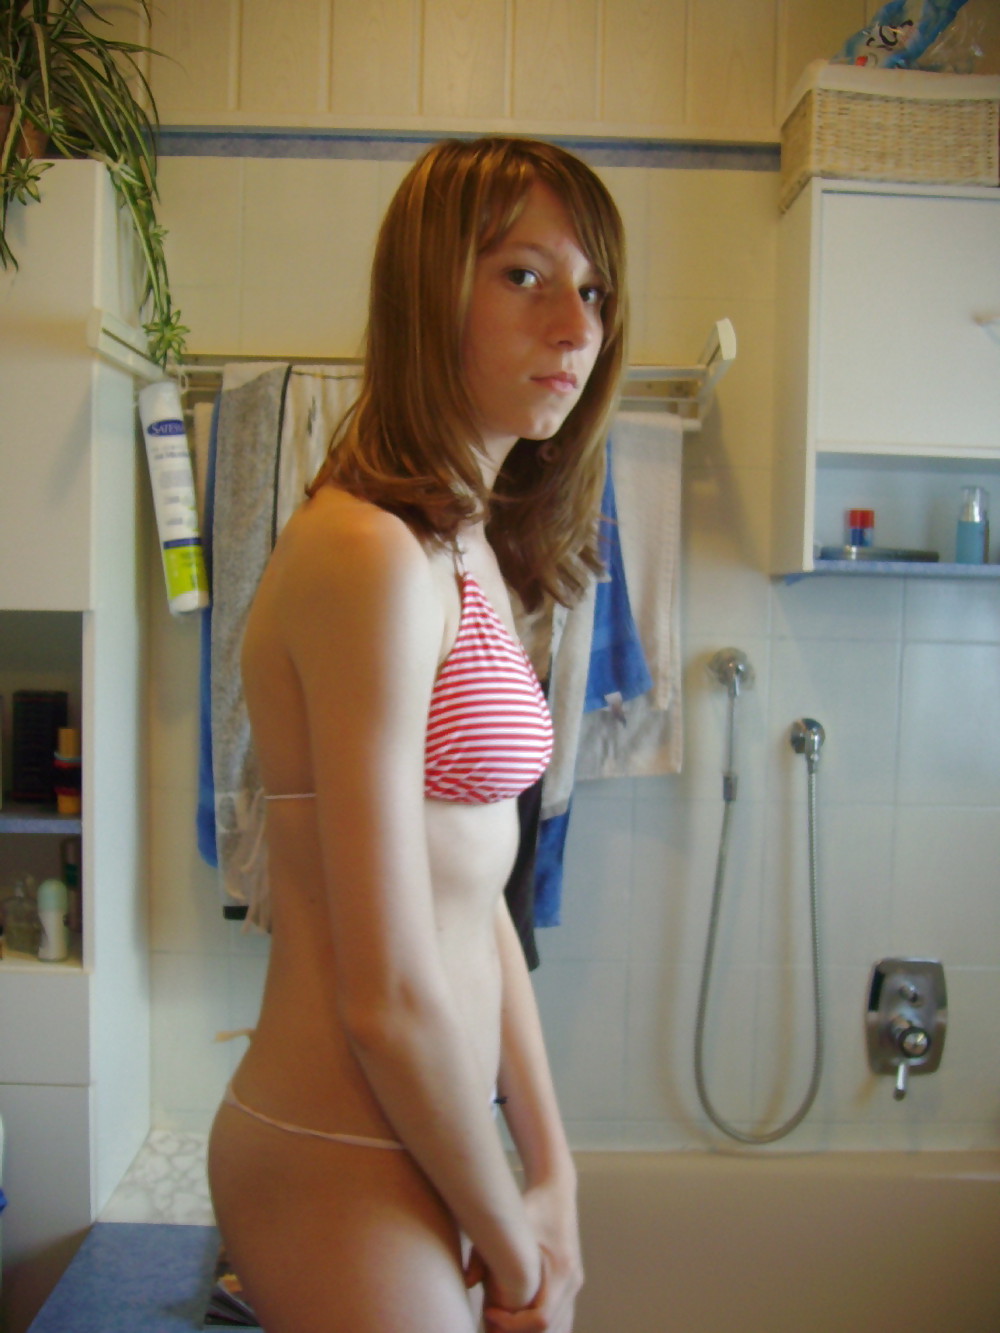 Sex Teenage girl selfshot 19 yr old (Photo set) image